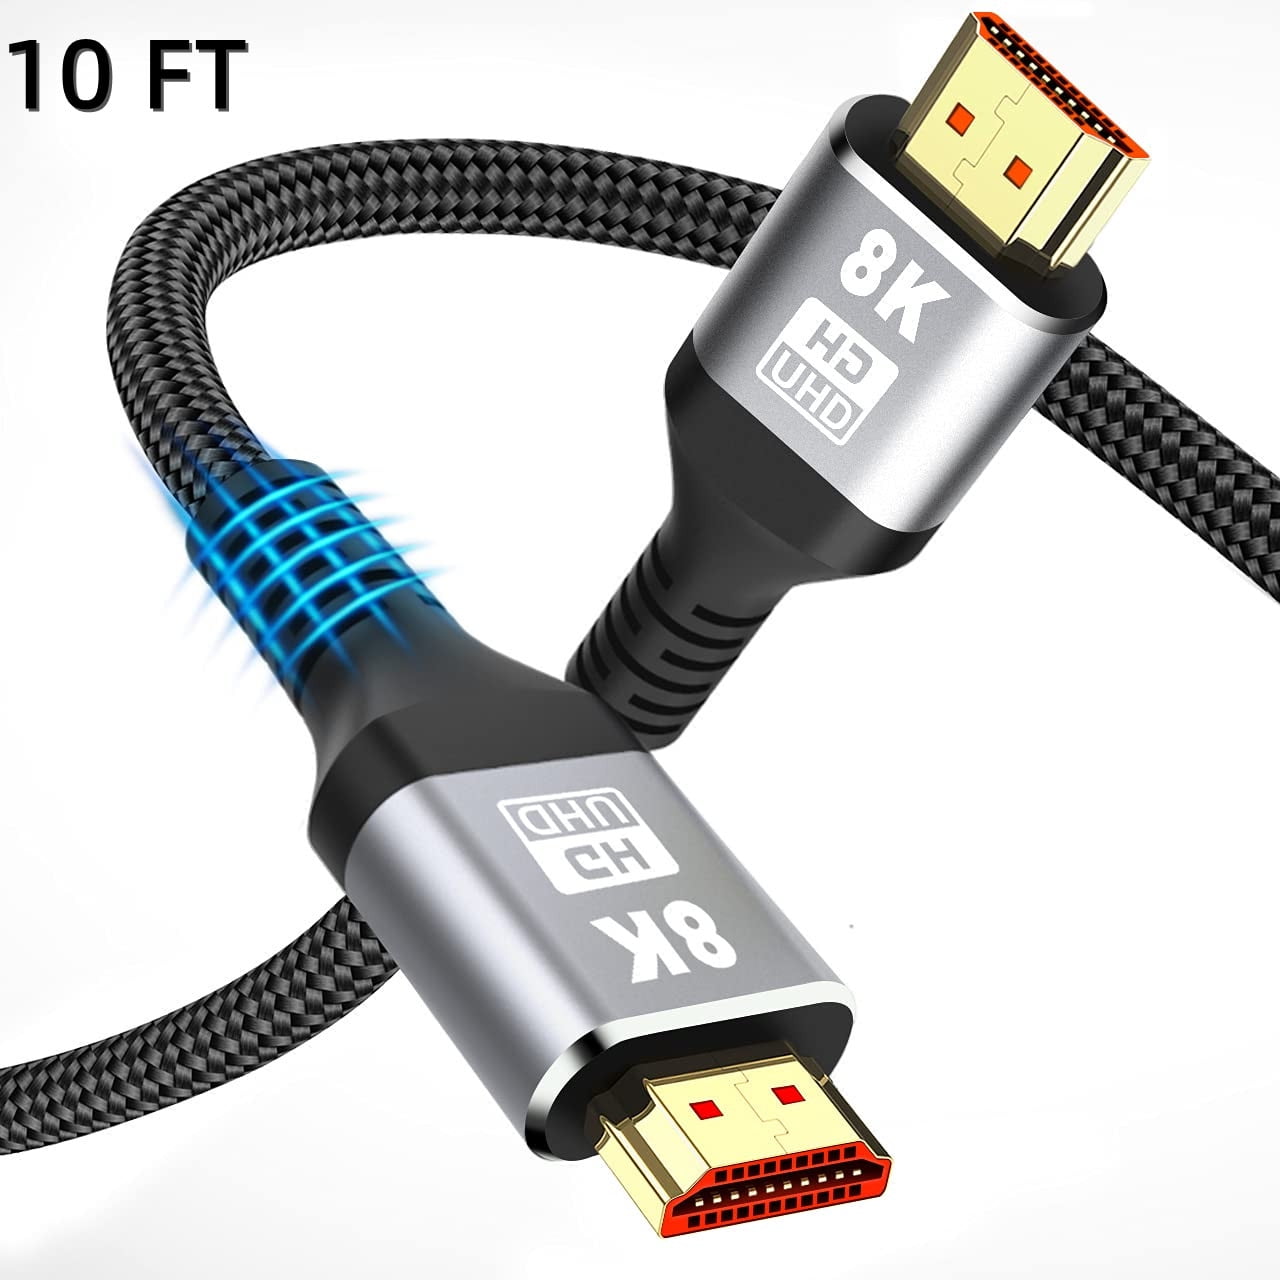 LCS - ORION XS - 7,5M - Câble HDMI 1.4 - 2.0 - 2.0 a/b